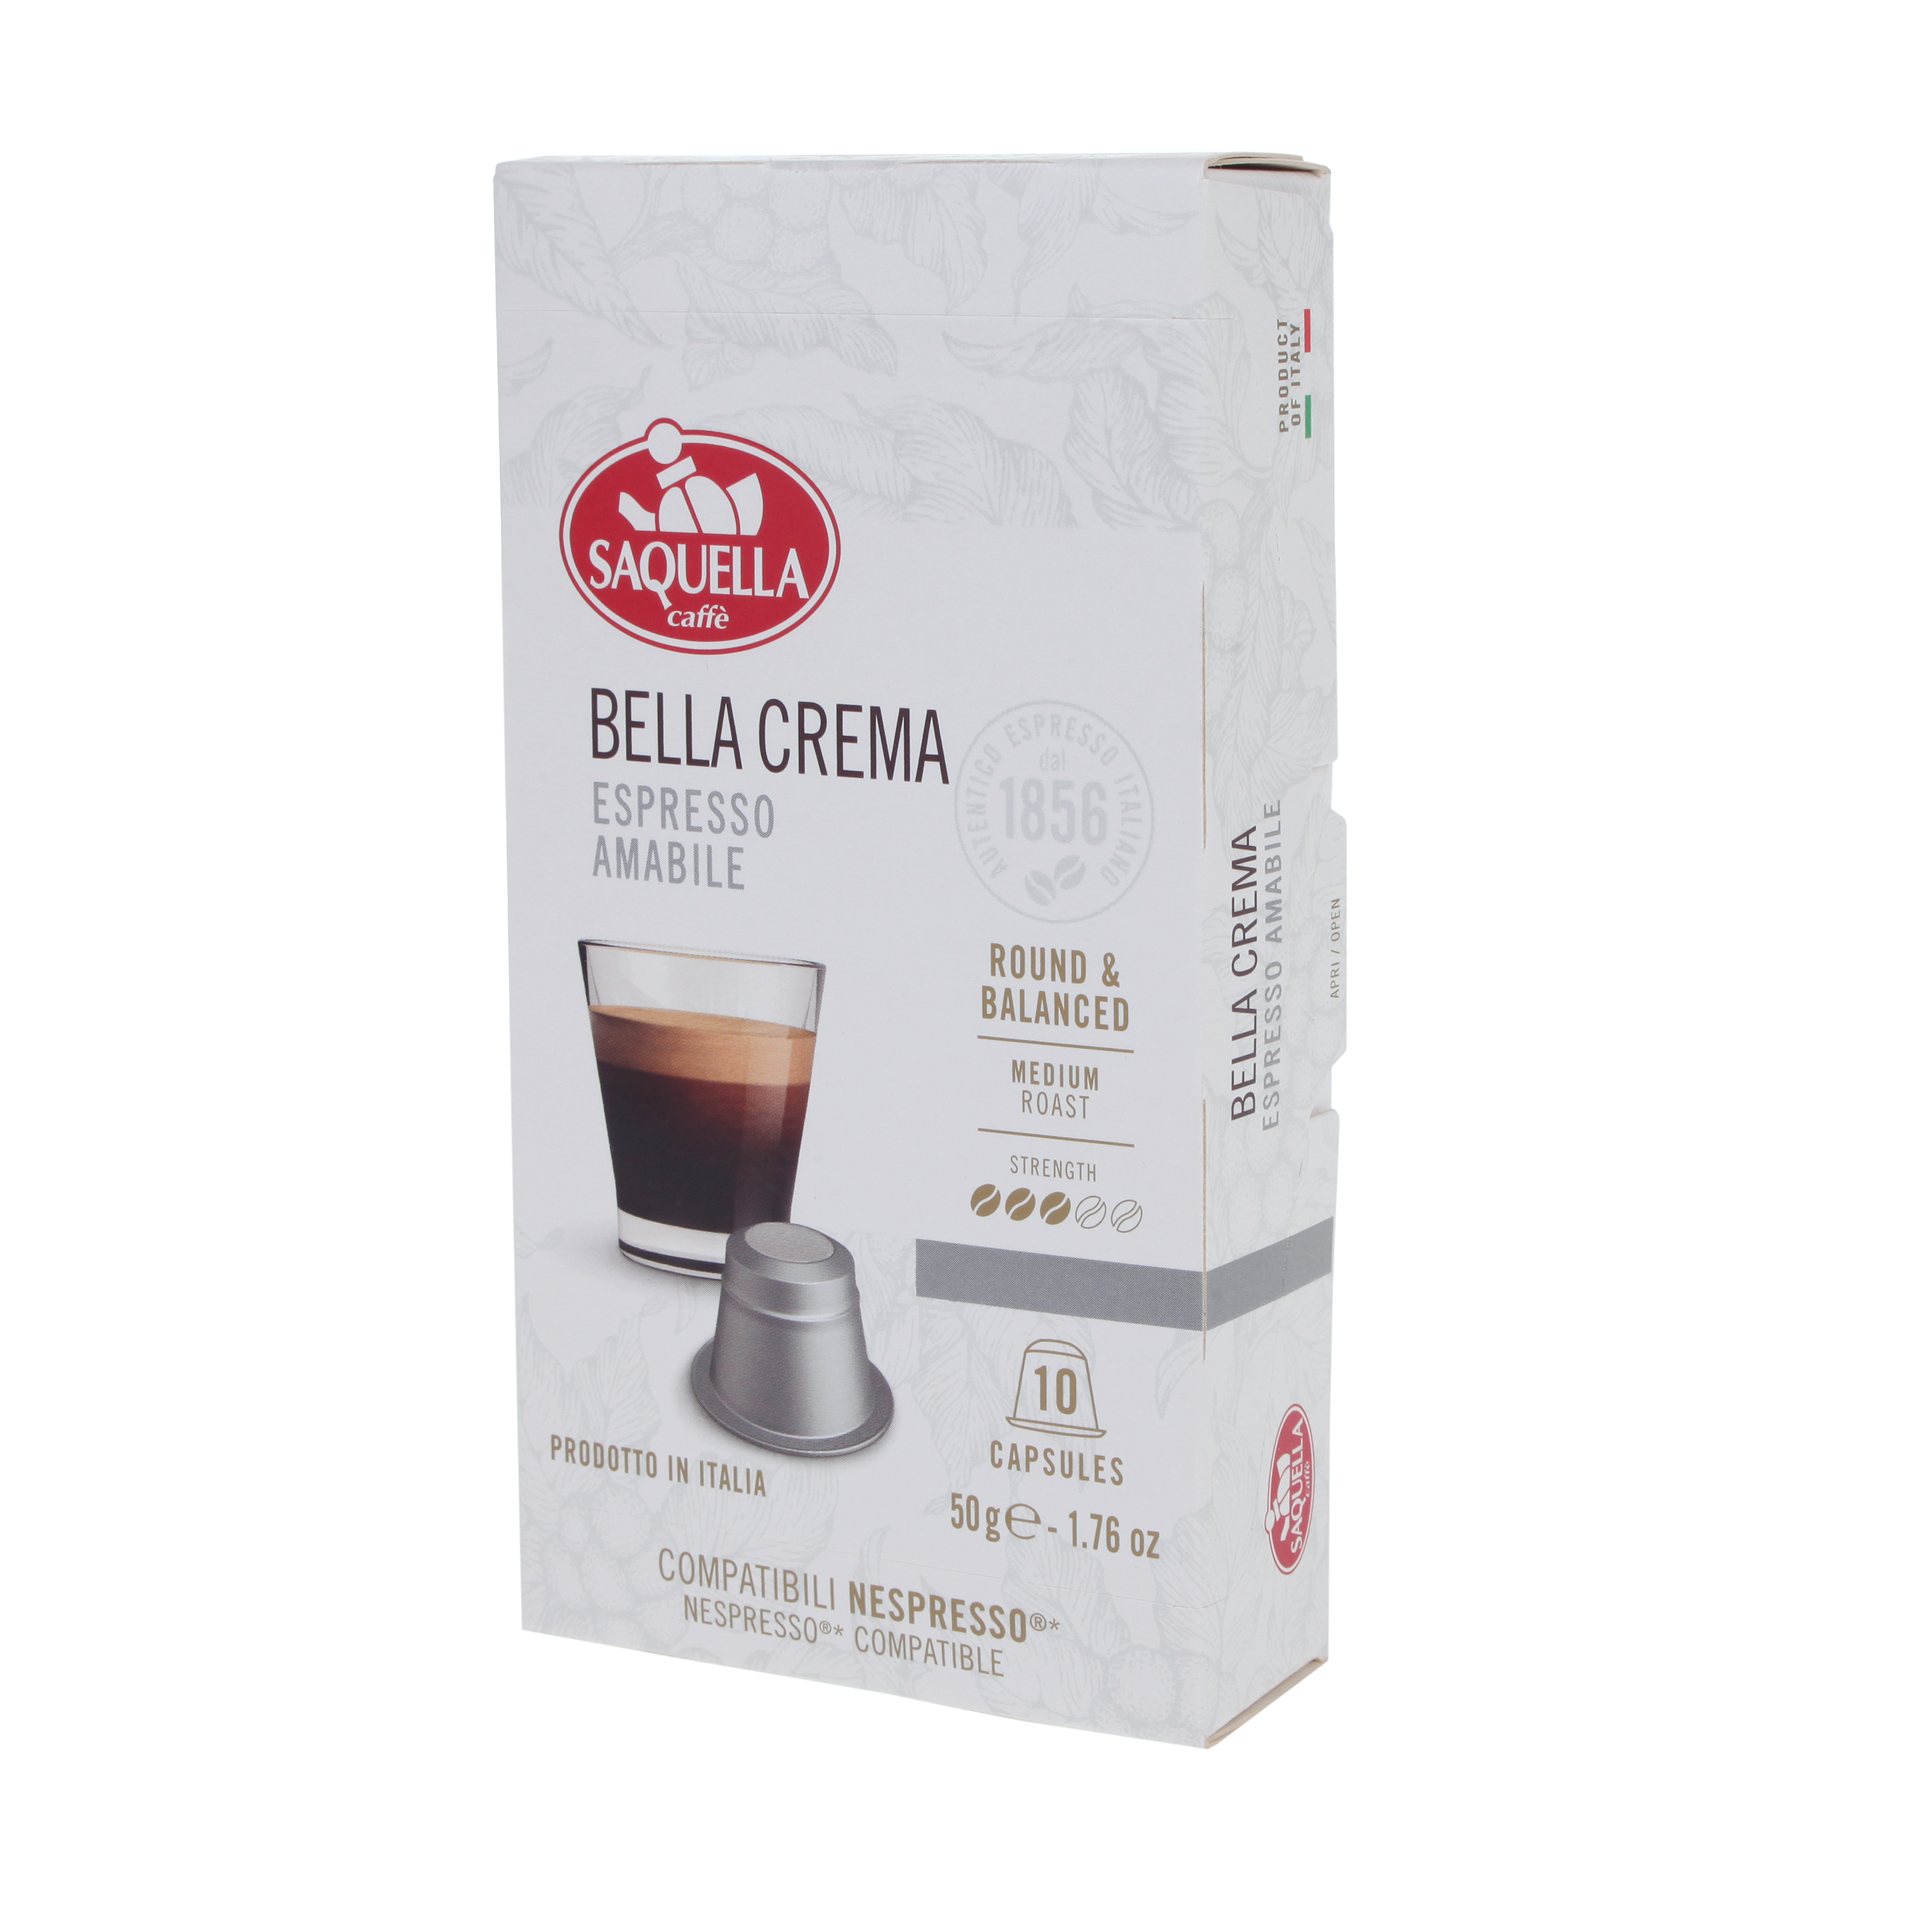 Saquella Bella Crema capsules 10 pieces